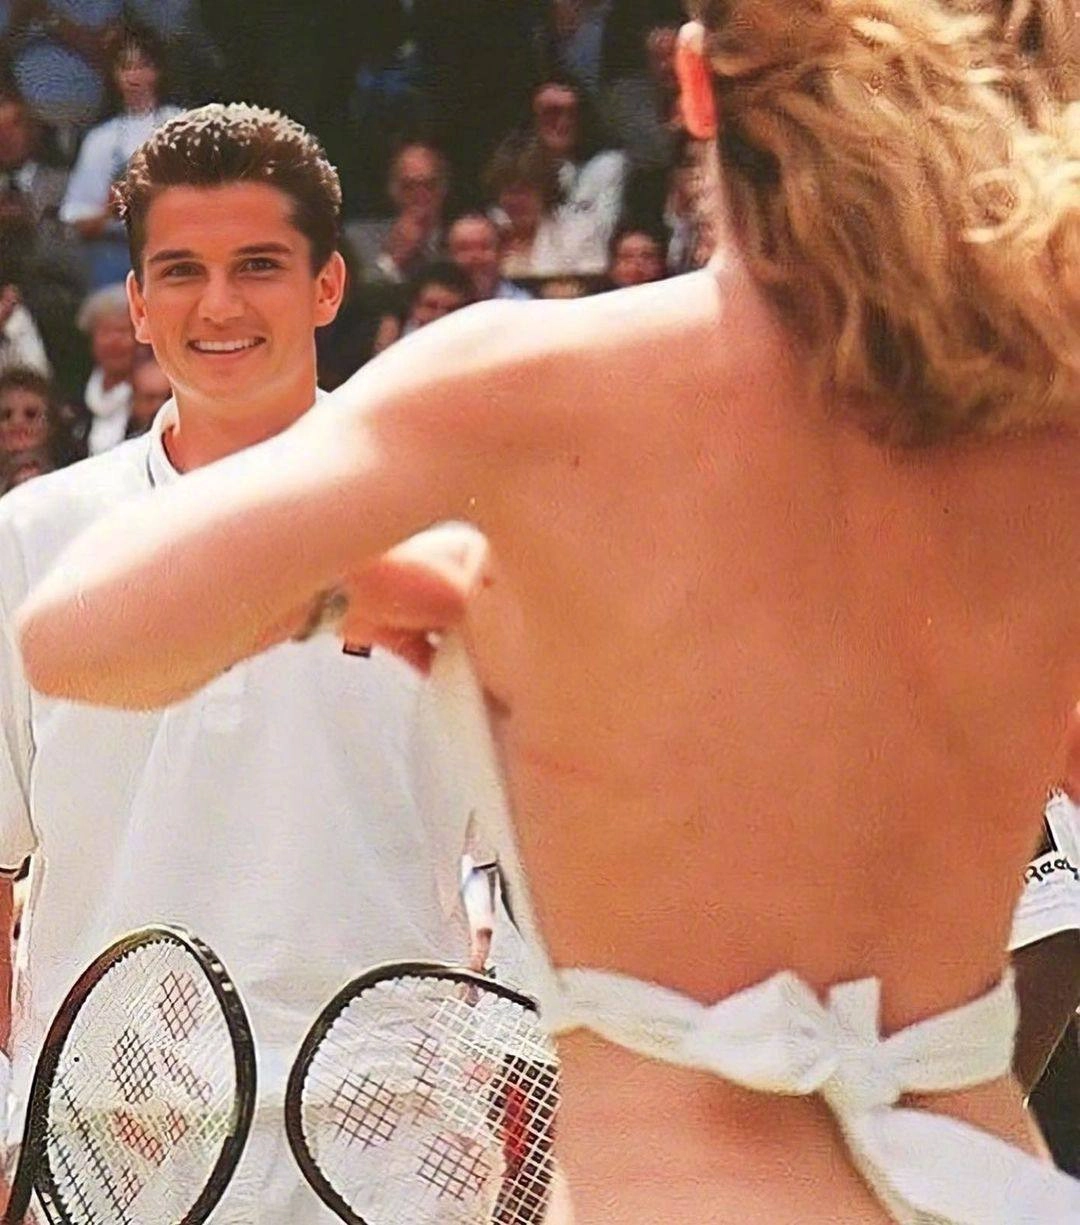 Tidak ada informasi yang tepat mengenai momen terkenal pada Wimbledon Open tahun 1996 pada bulan Maret. Apakah ada momen khusus yang Anda inginkan untuk diterjemahkan?